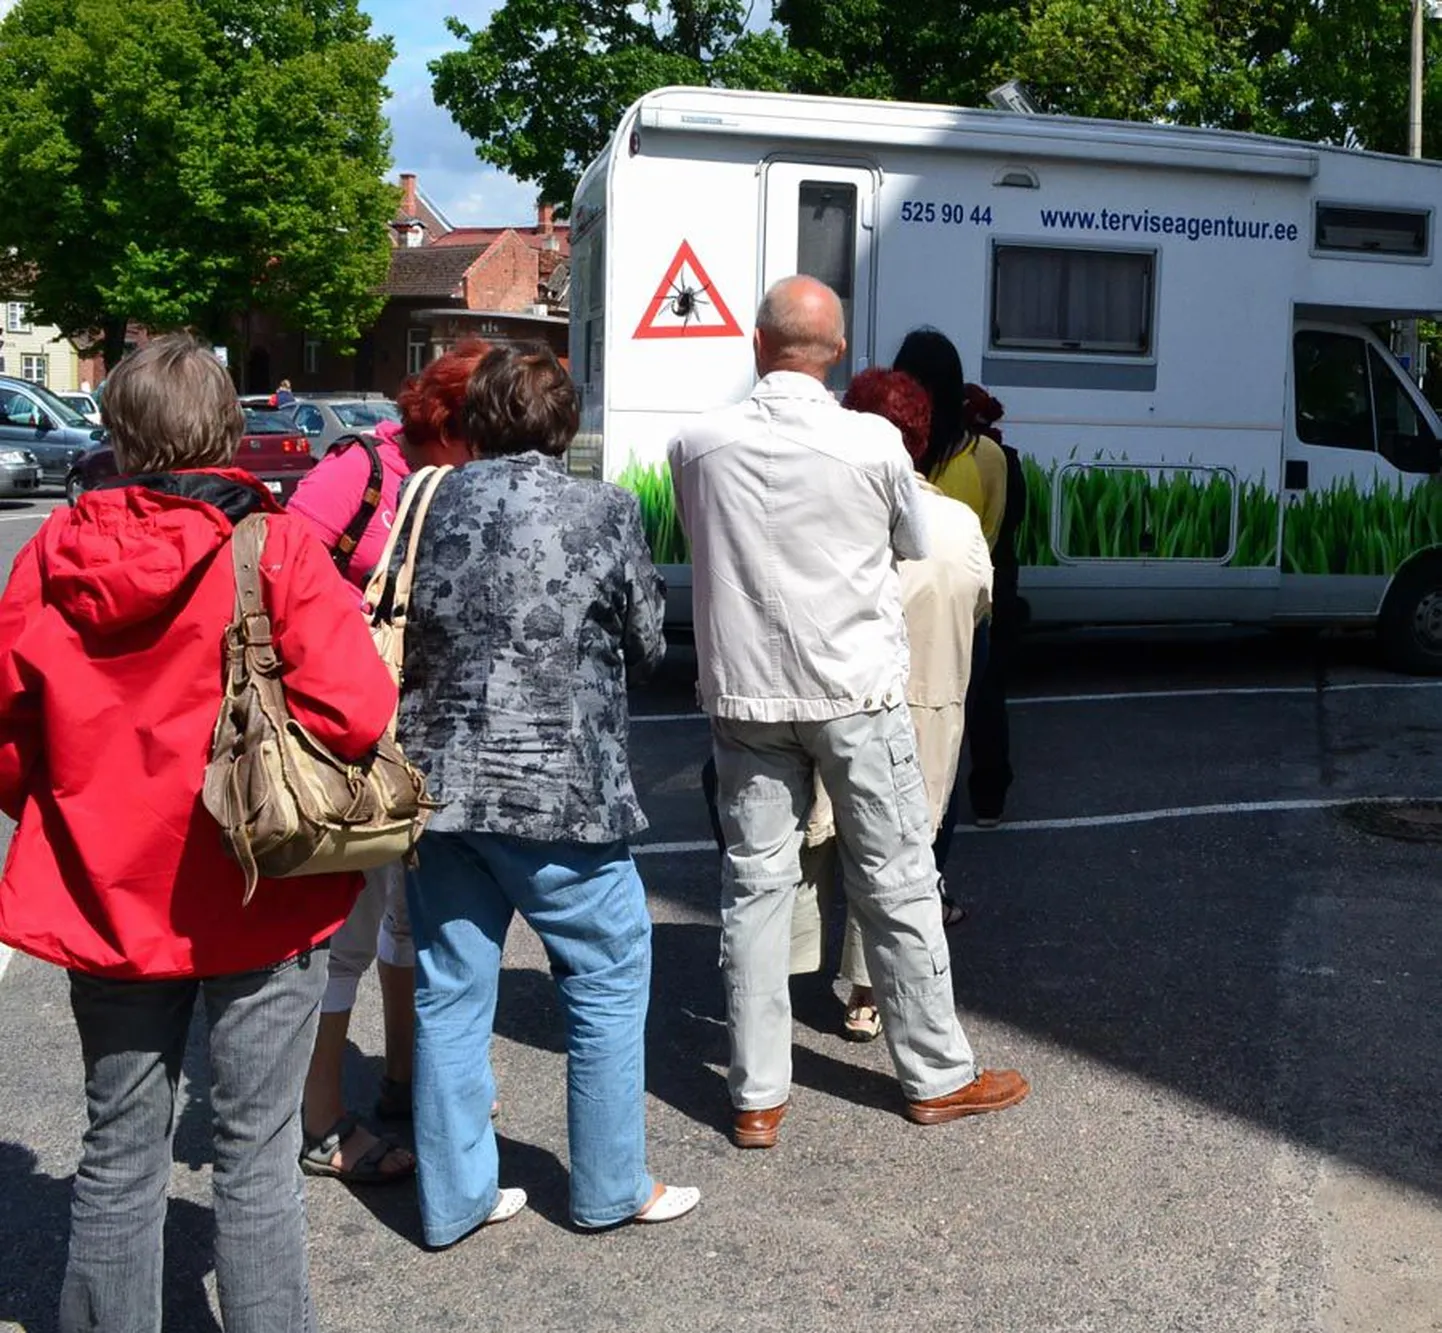 Vaktsiinibuss peatus juunis Viljandis Vabaduse platsil kolm päeva. See saavutas inimeste seas suure menu.